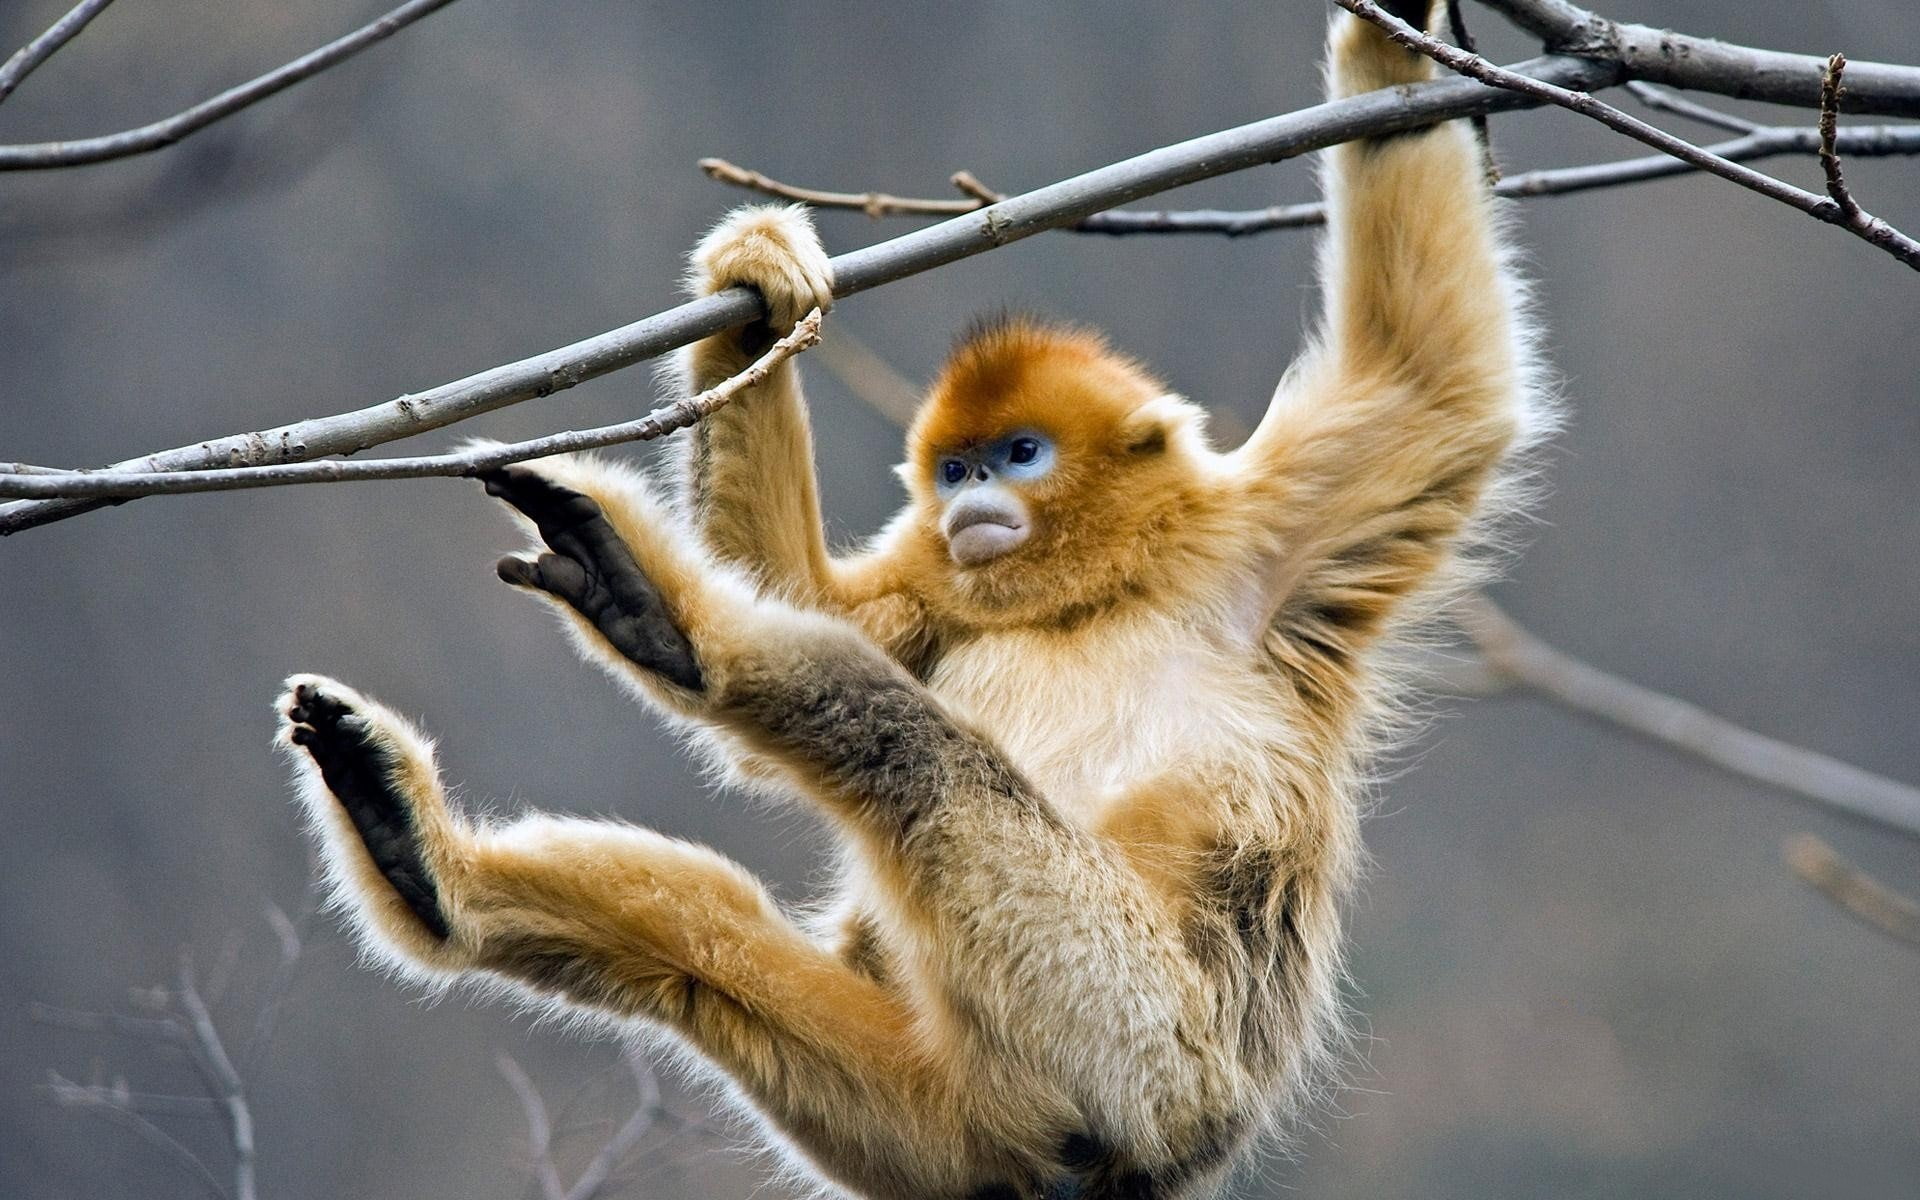 Monkeys, Golden snub-nosed monkey